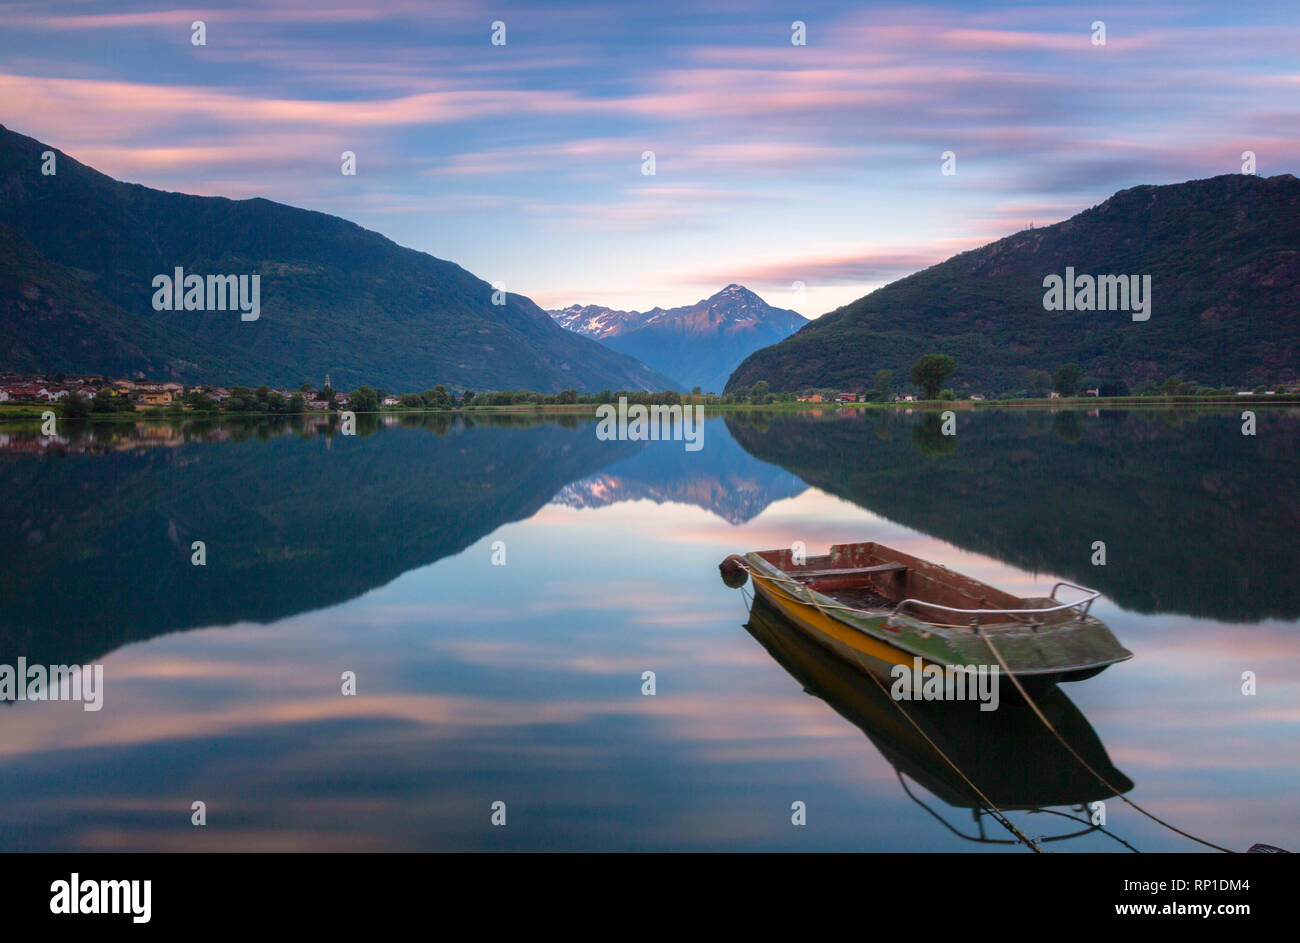 Boat moored in lake of Novate Mezzola at sunrise, Valchiavenna, Sondrio province, Valtellina, Lombardy, Italy Stock Photo